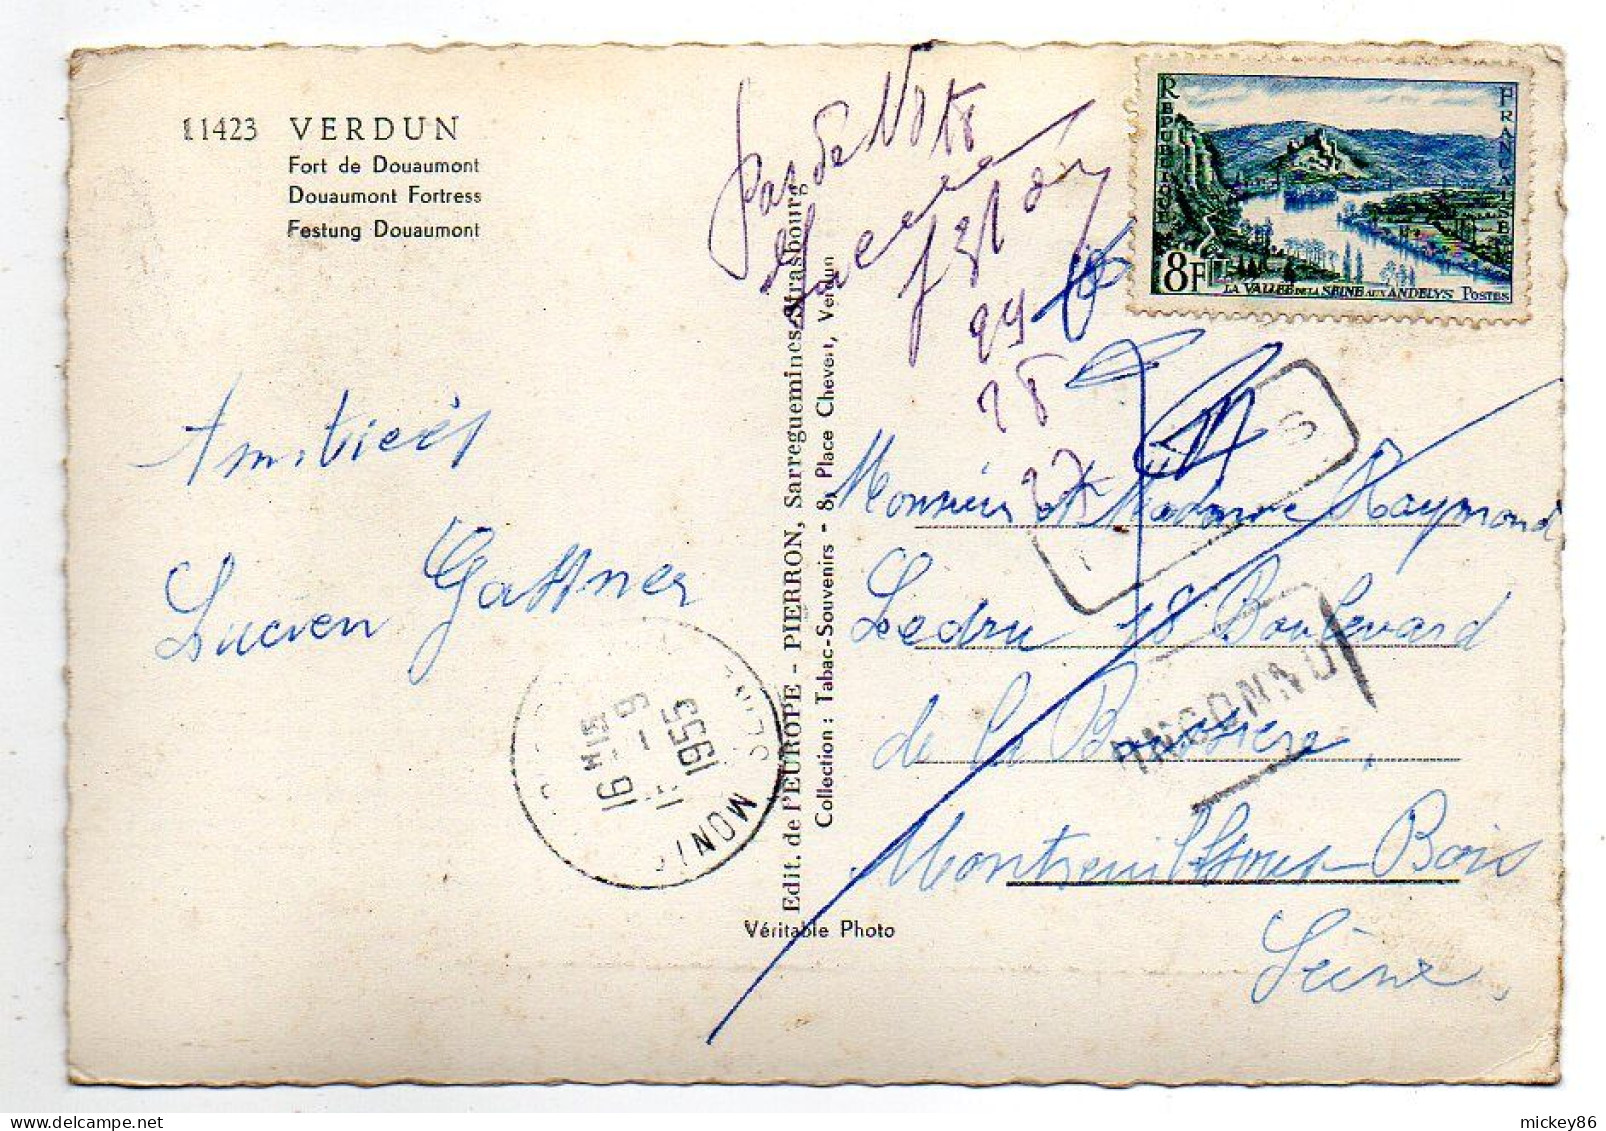 VERDUN -1955--Le Fort De Douaumont ..--militaria--..timbre...cachet... ..griffes - Verdun